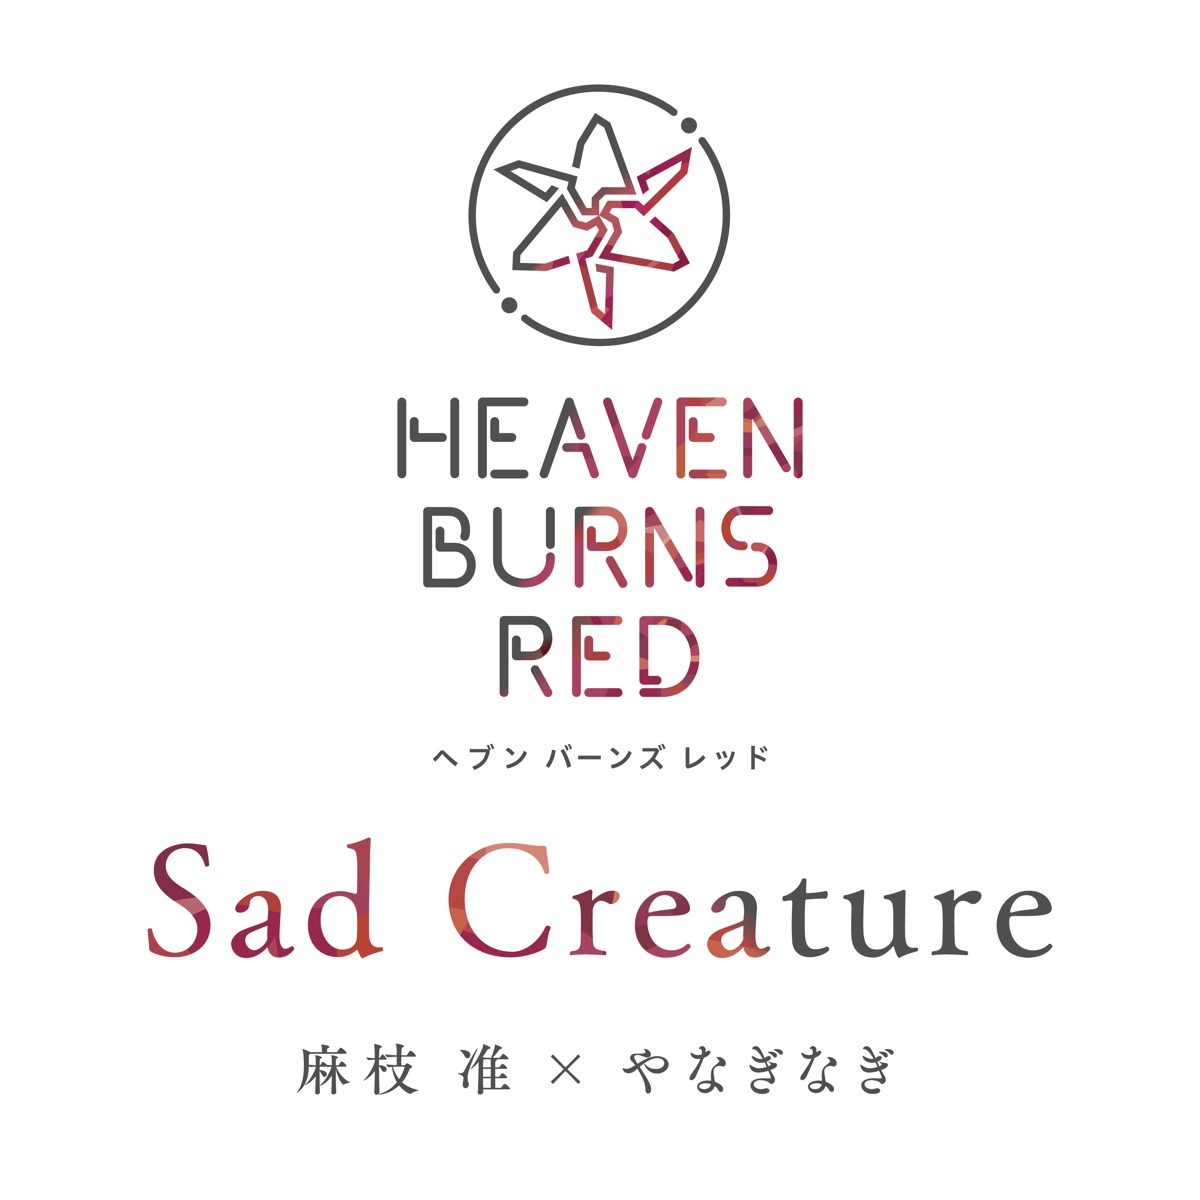 『麻枝准×やなぎなぎ - Sad Creature』収録の『Sad Creature』ジャケット